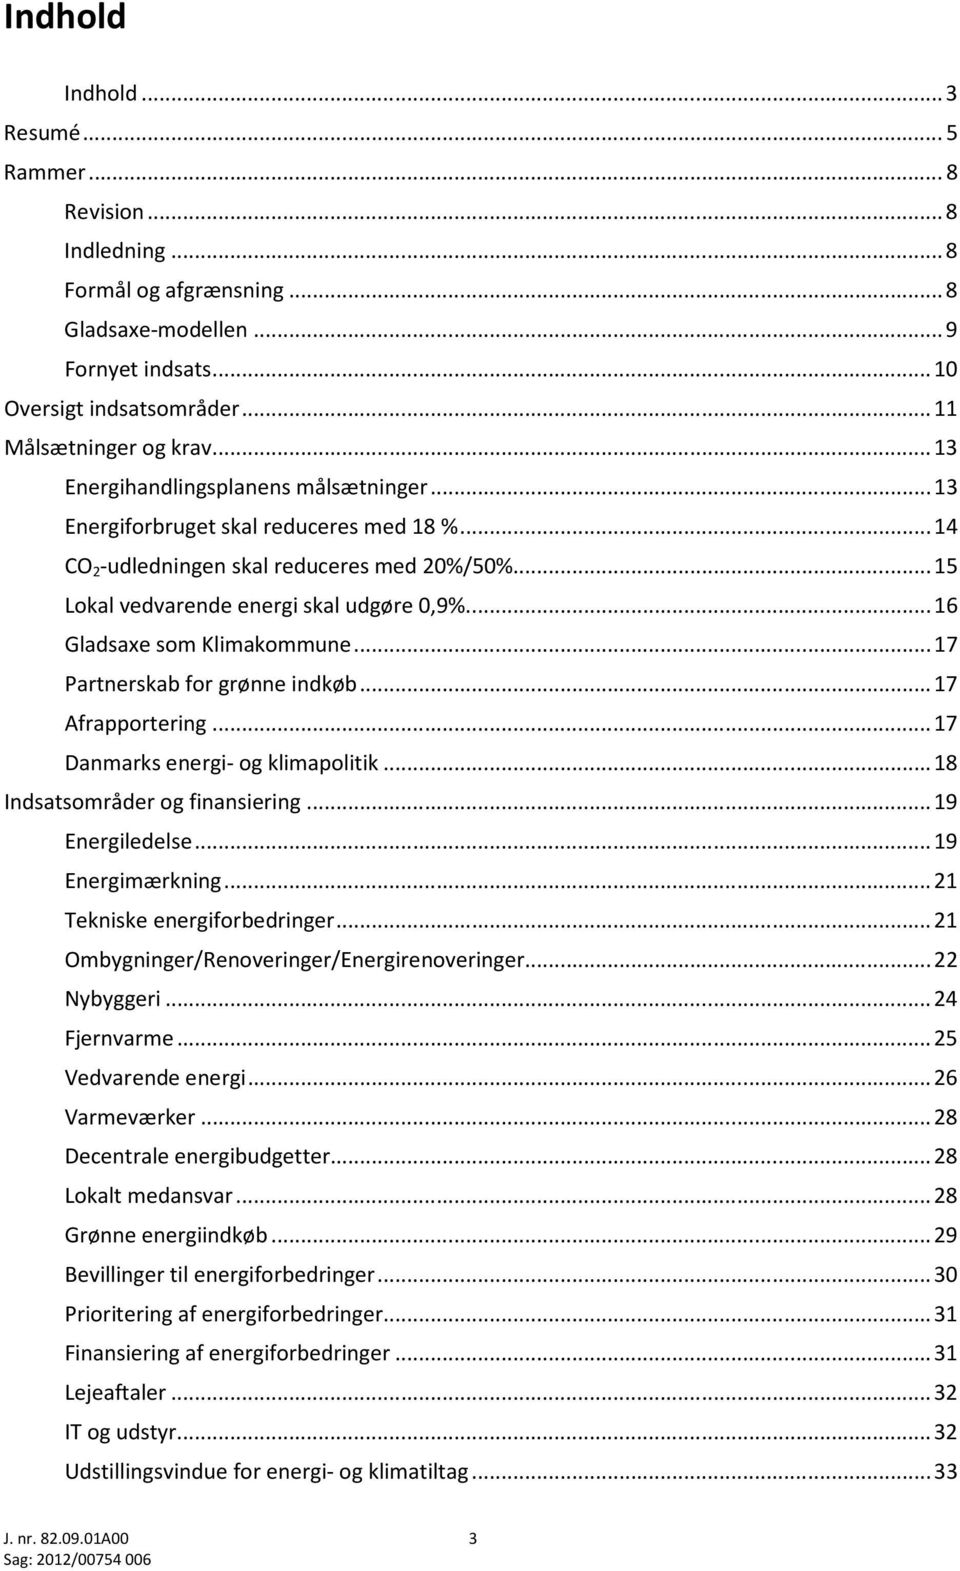 ... 16 Gladsaxe som Klimakommune... 17 Partnerskab for grønne indkøb... 17 Afrapportering... 17 Danmarks energi- og klimapolitik... 18 Indsatsområder og finansiering... 19 Energiledelse.